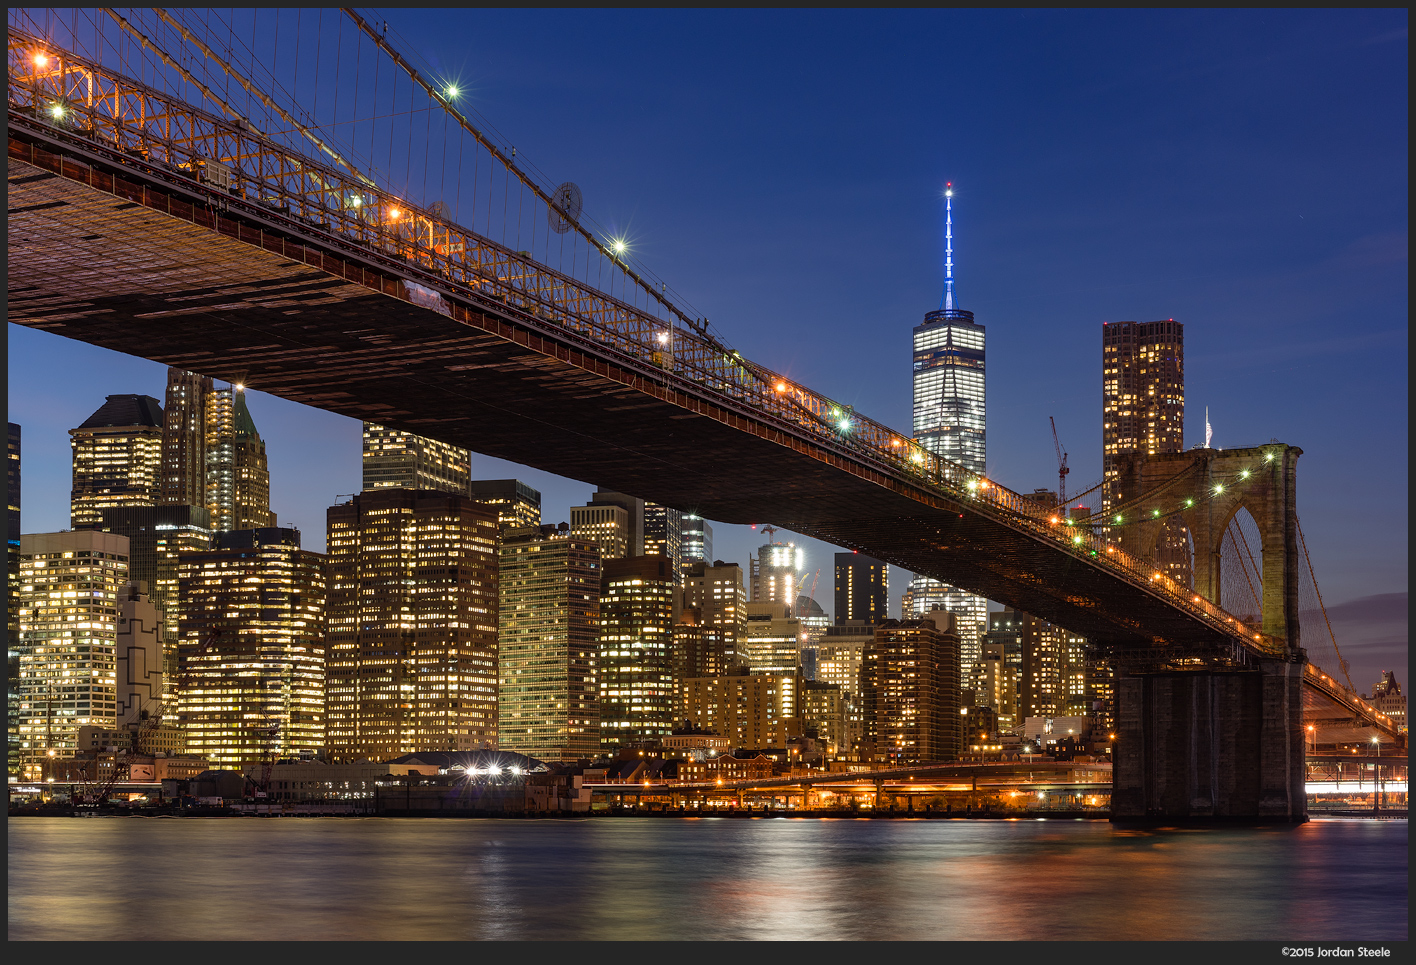 Manhattan Skyline - Sony A7 II with Zeiss FE 16-35mm f/4 @